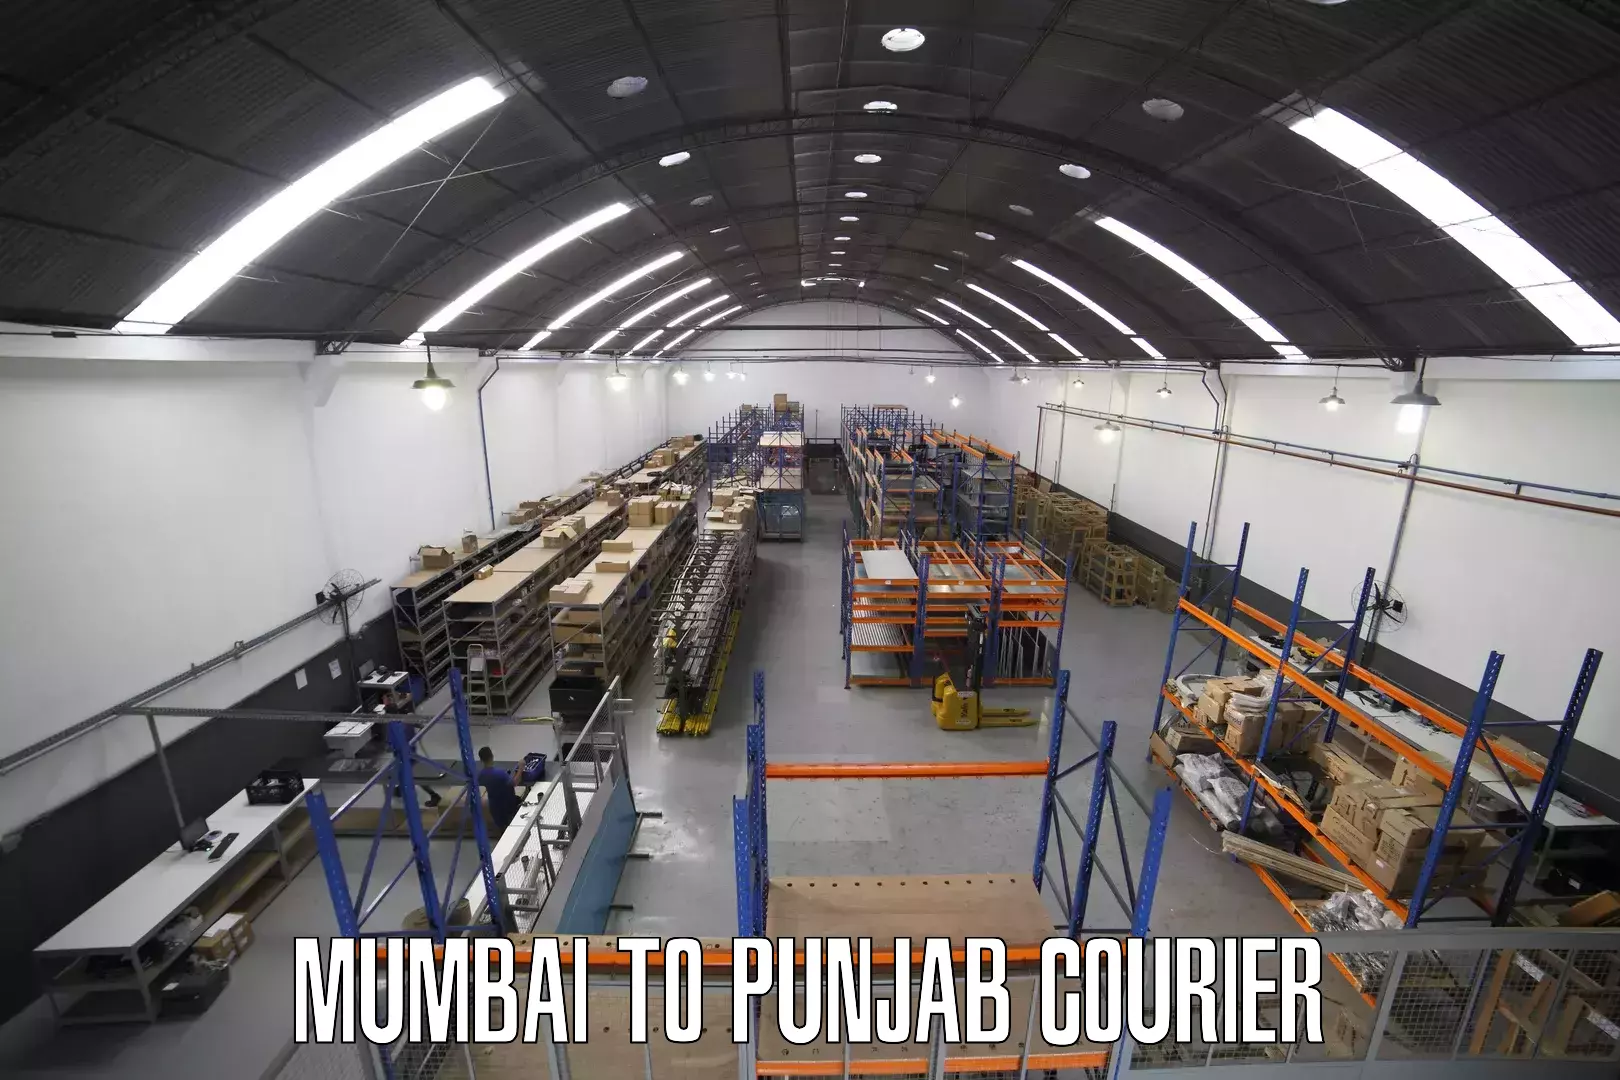 Long distance courier Mumbai to Dinanagar